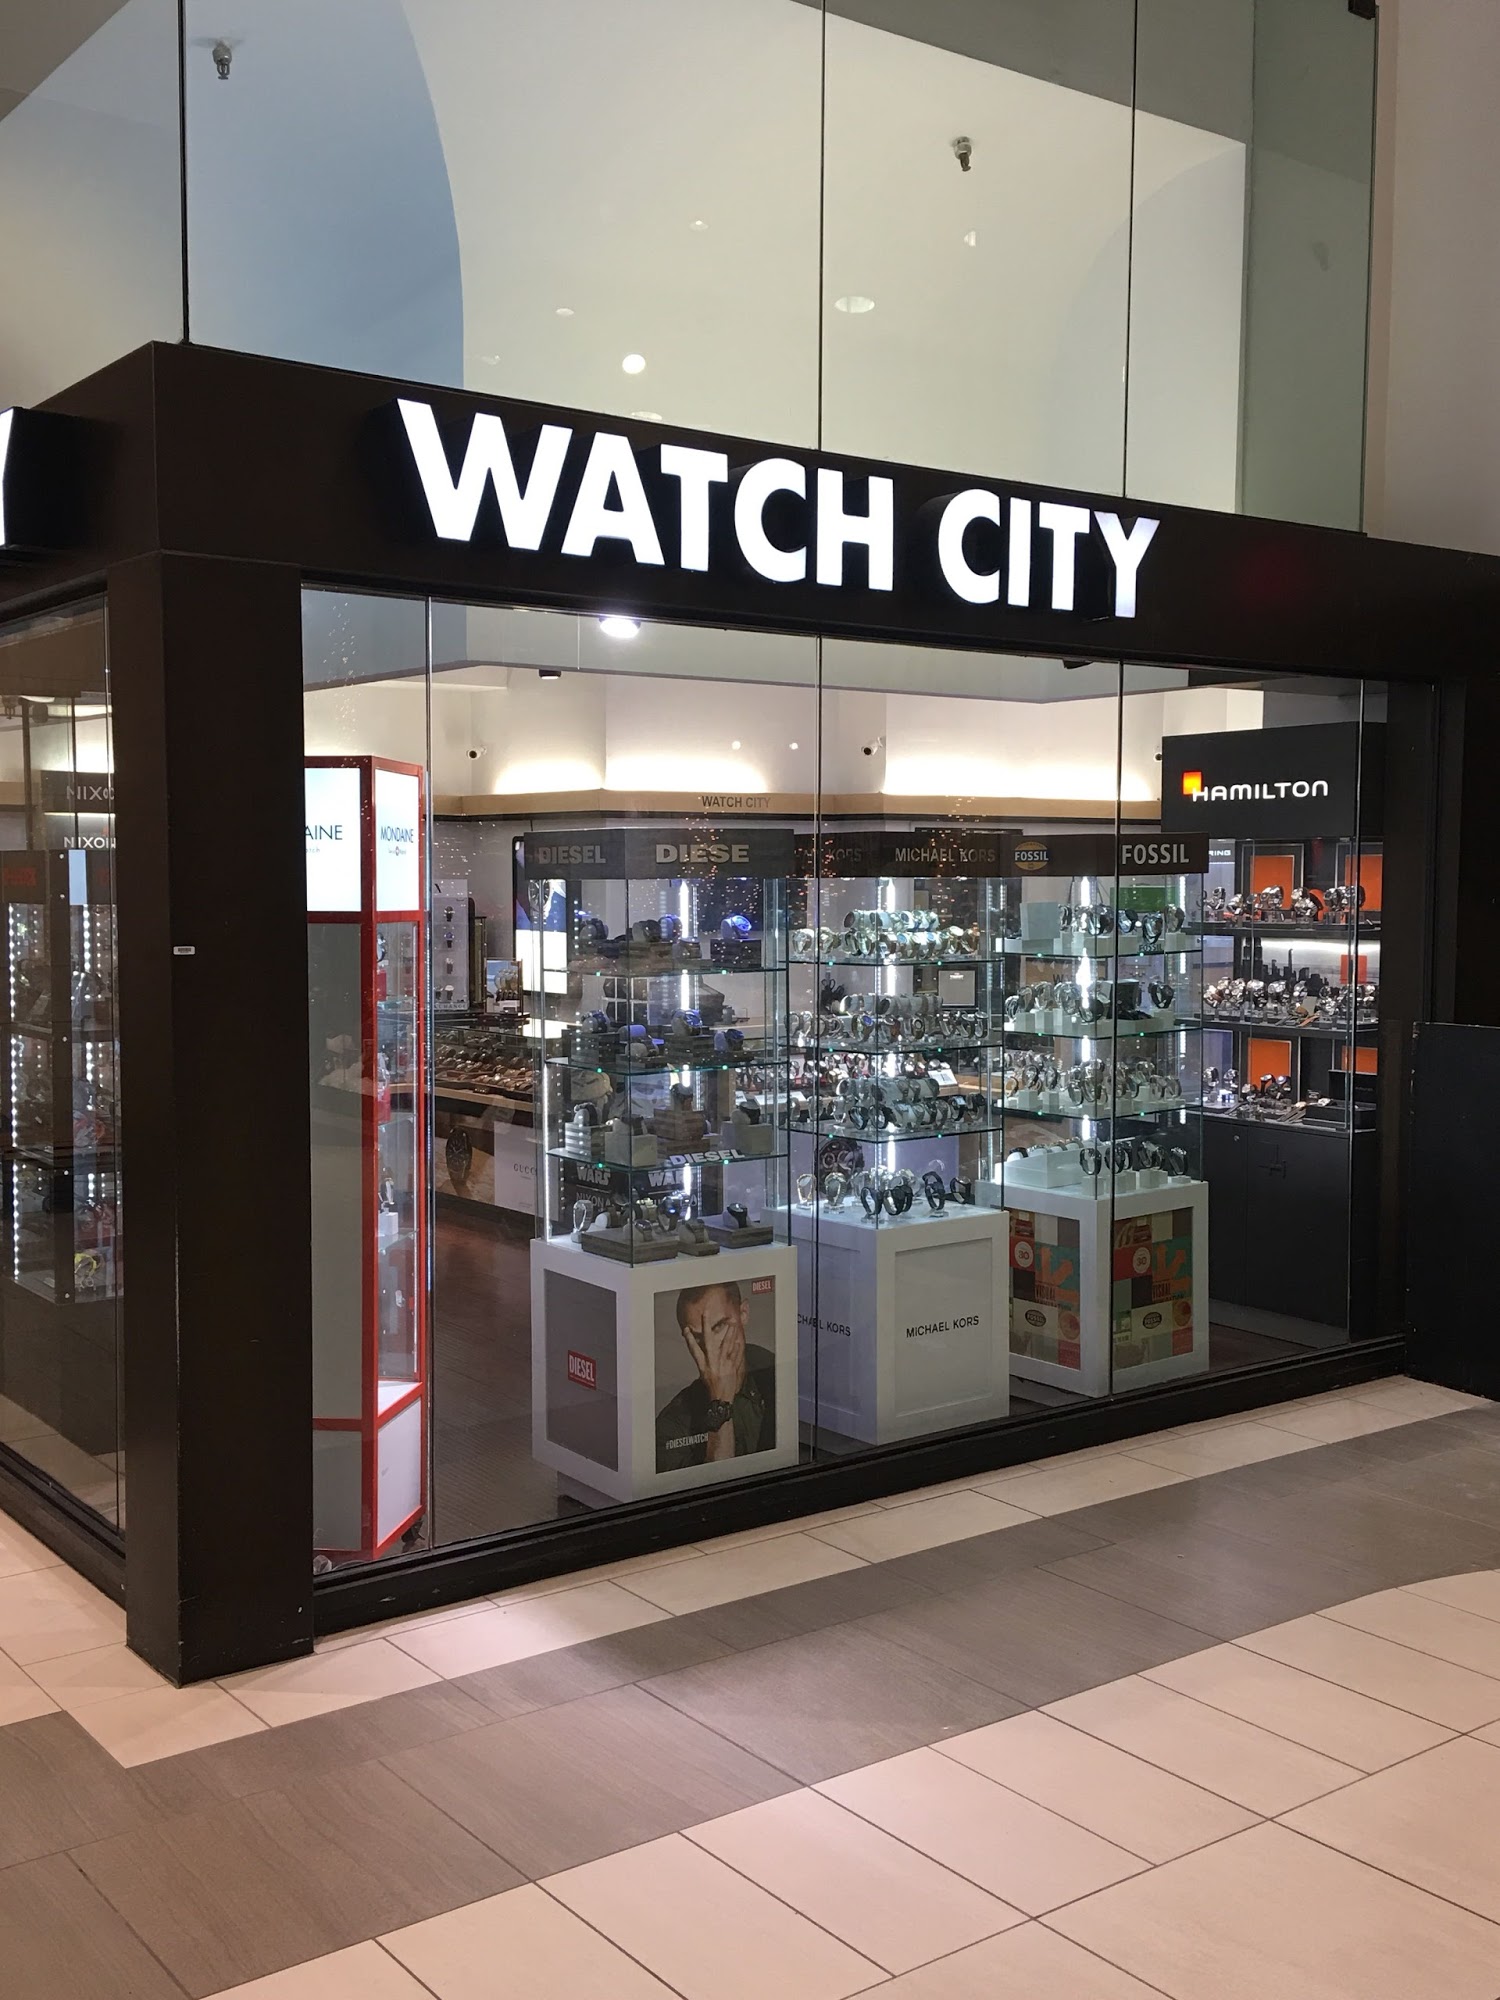 Watch City, Inc.